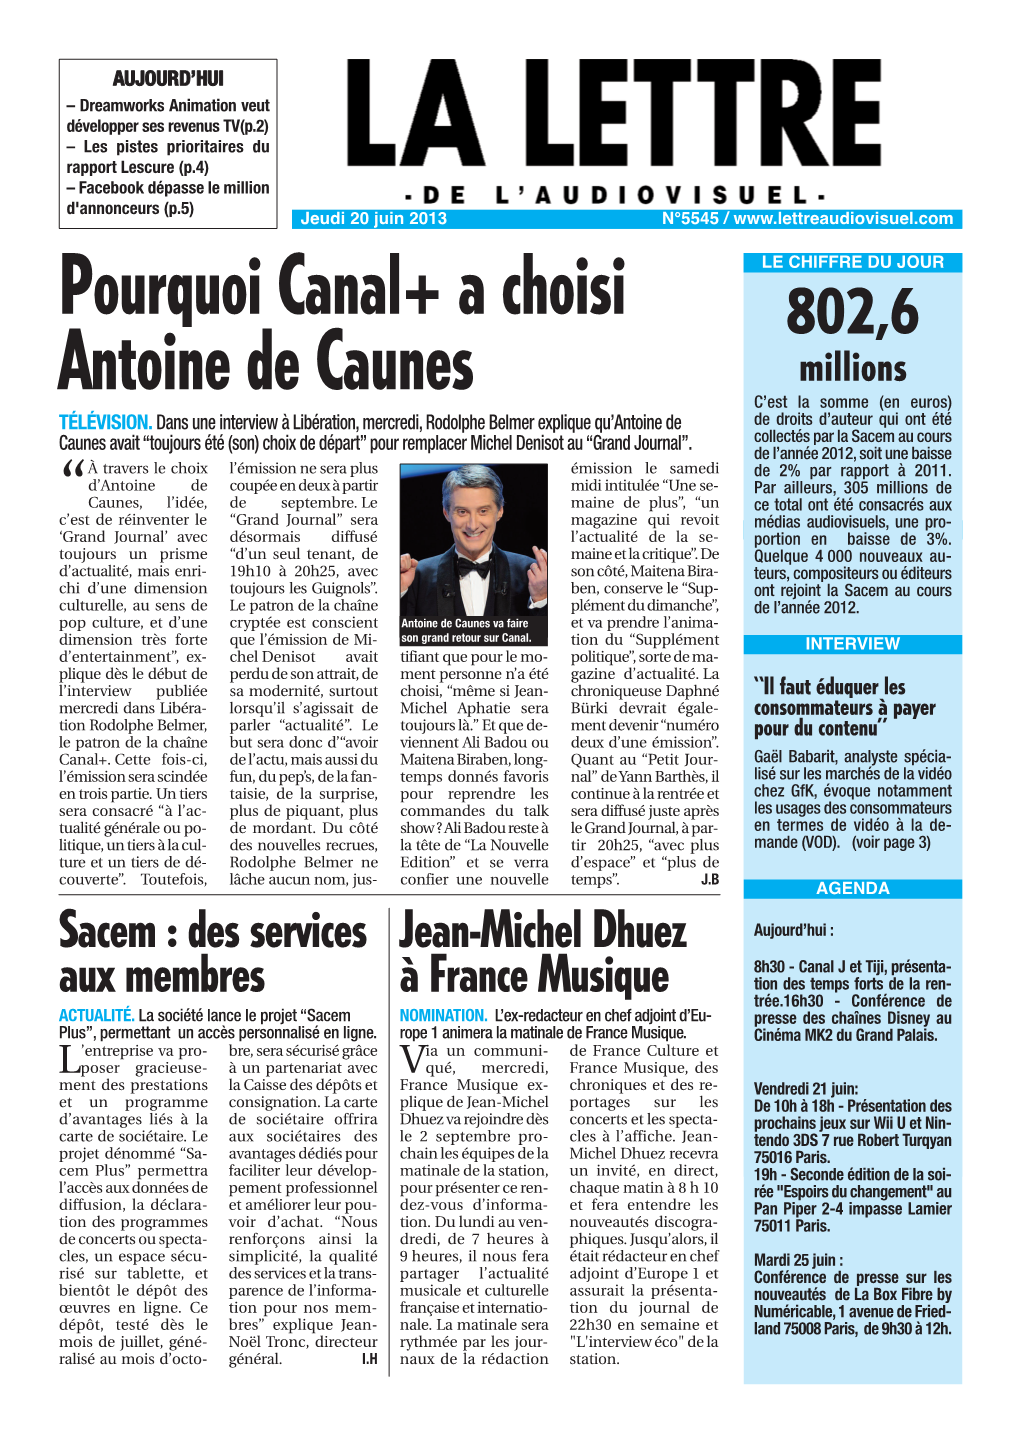 Pourquoi Canal+ a Choisi Antoine De Caunes